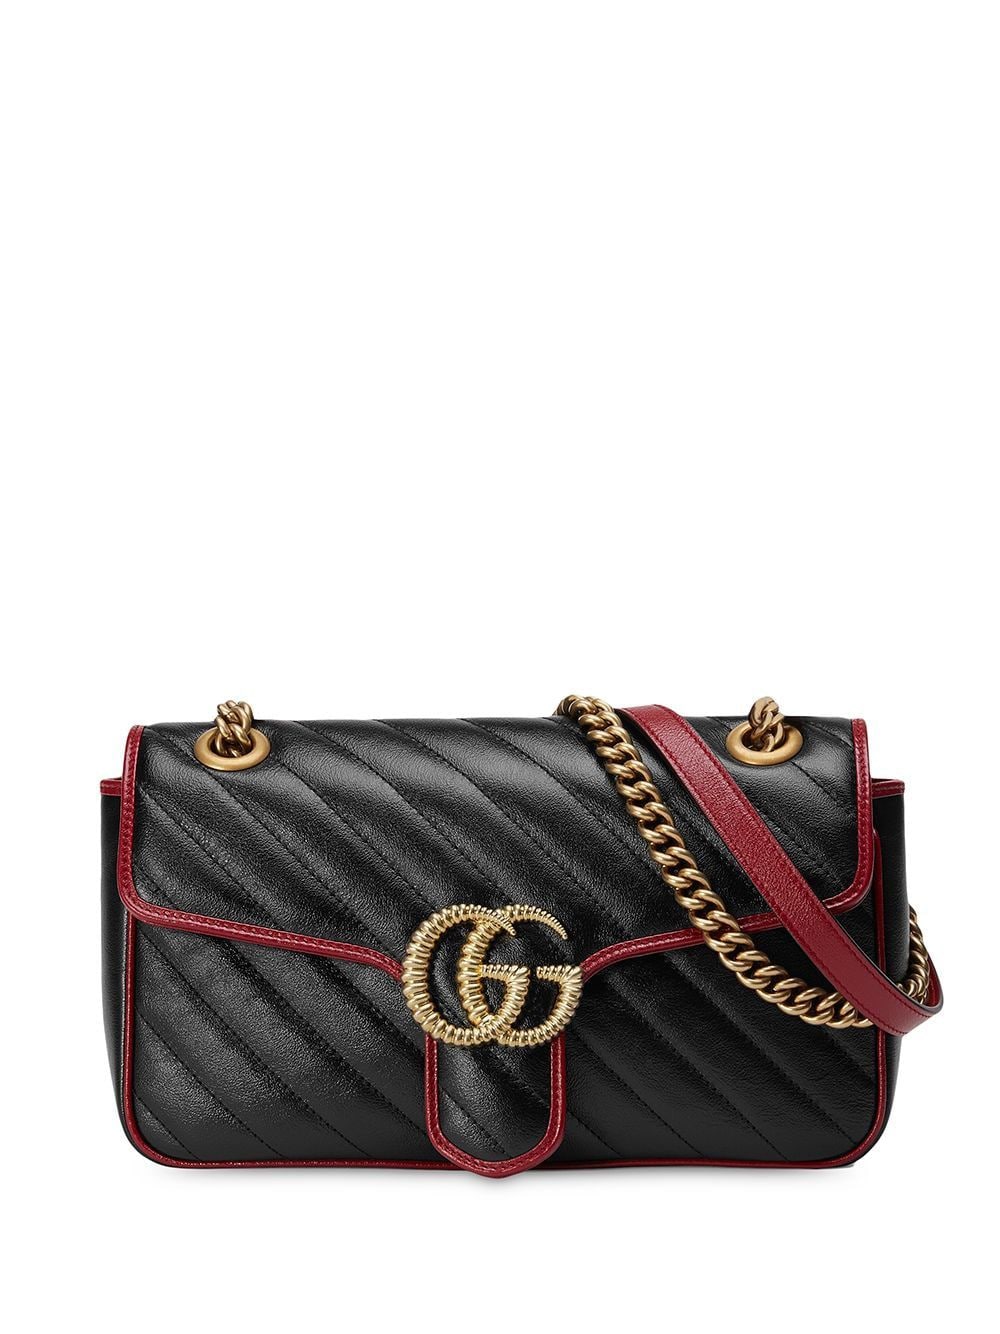 фото Gucci сумка на плечо gg marmont